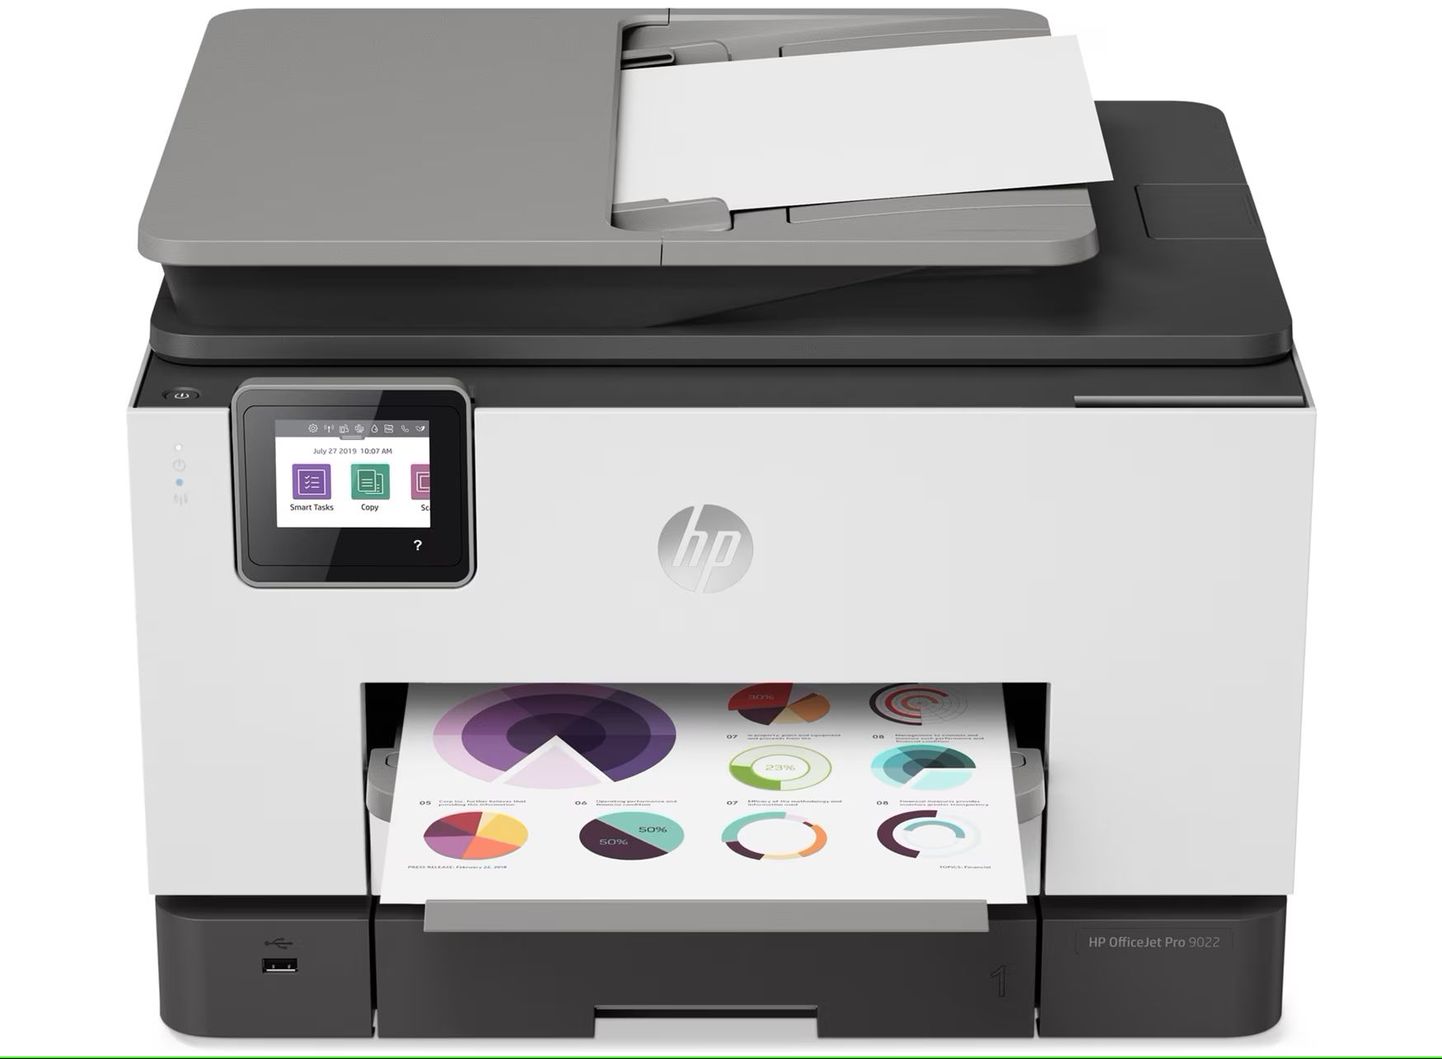 Sellist tüüpi värviekraaniga printerid lakkasid maikuus töötamast, kui üle õhu saabus HP ametlik tarkvarauuendus. Rikkis printerit polnud võimalik enam tagasi töökorda saada